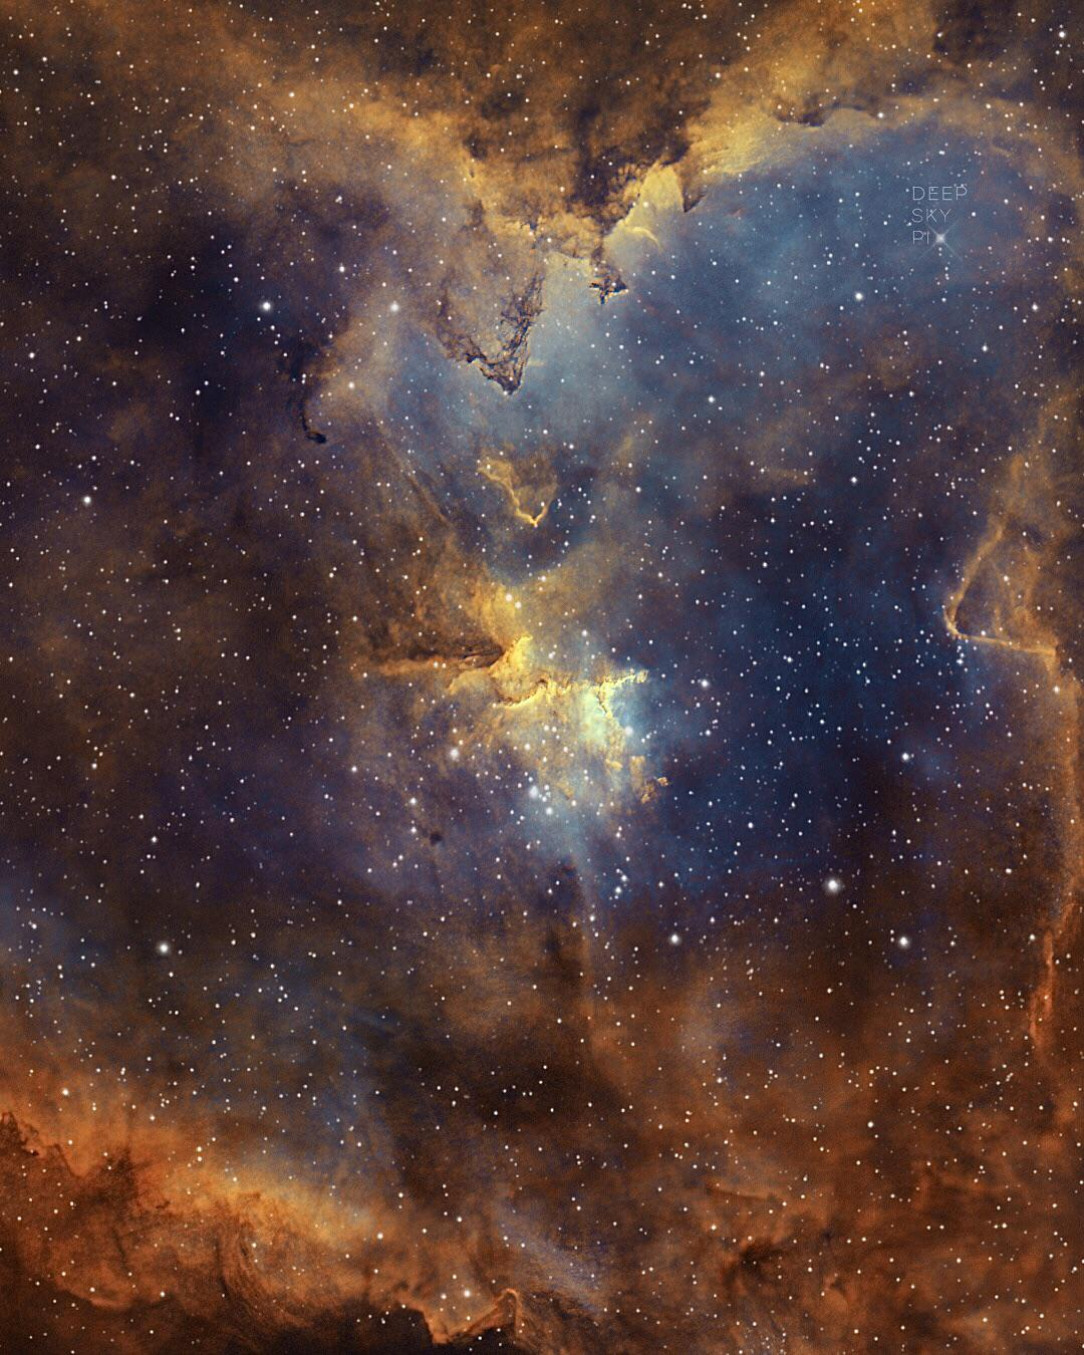 Melotte 15 Nebula With a DSLR